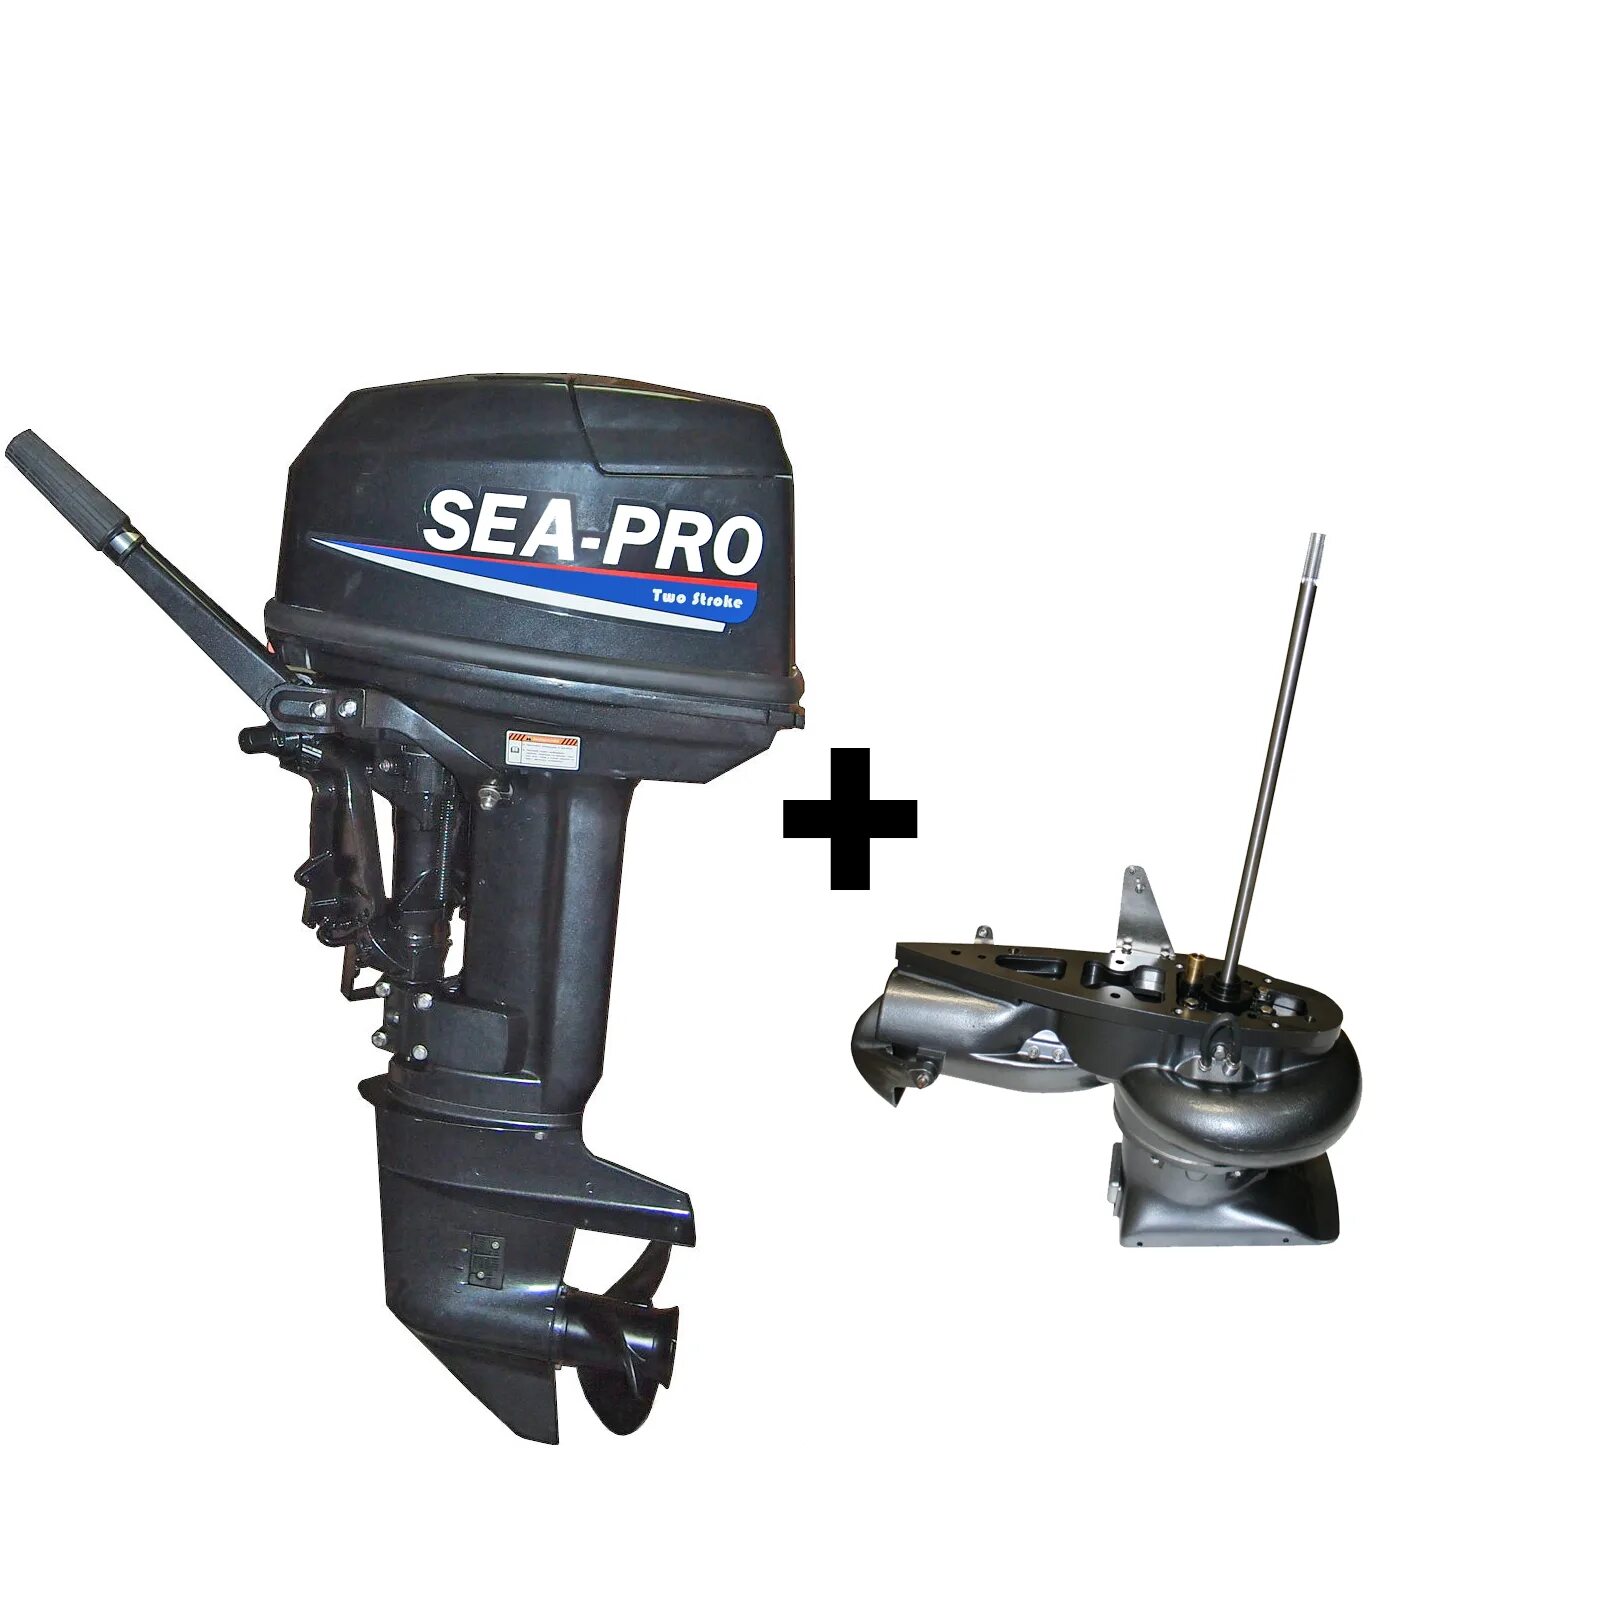 Купить водометный лодочный мотор. Sea Pro t30js. Водомет Sea-Pro t25s. Водомет Sea Pro 30. Sea-Pro t30js (водометный).